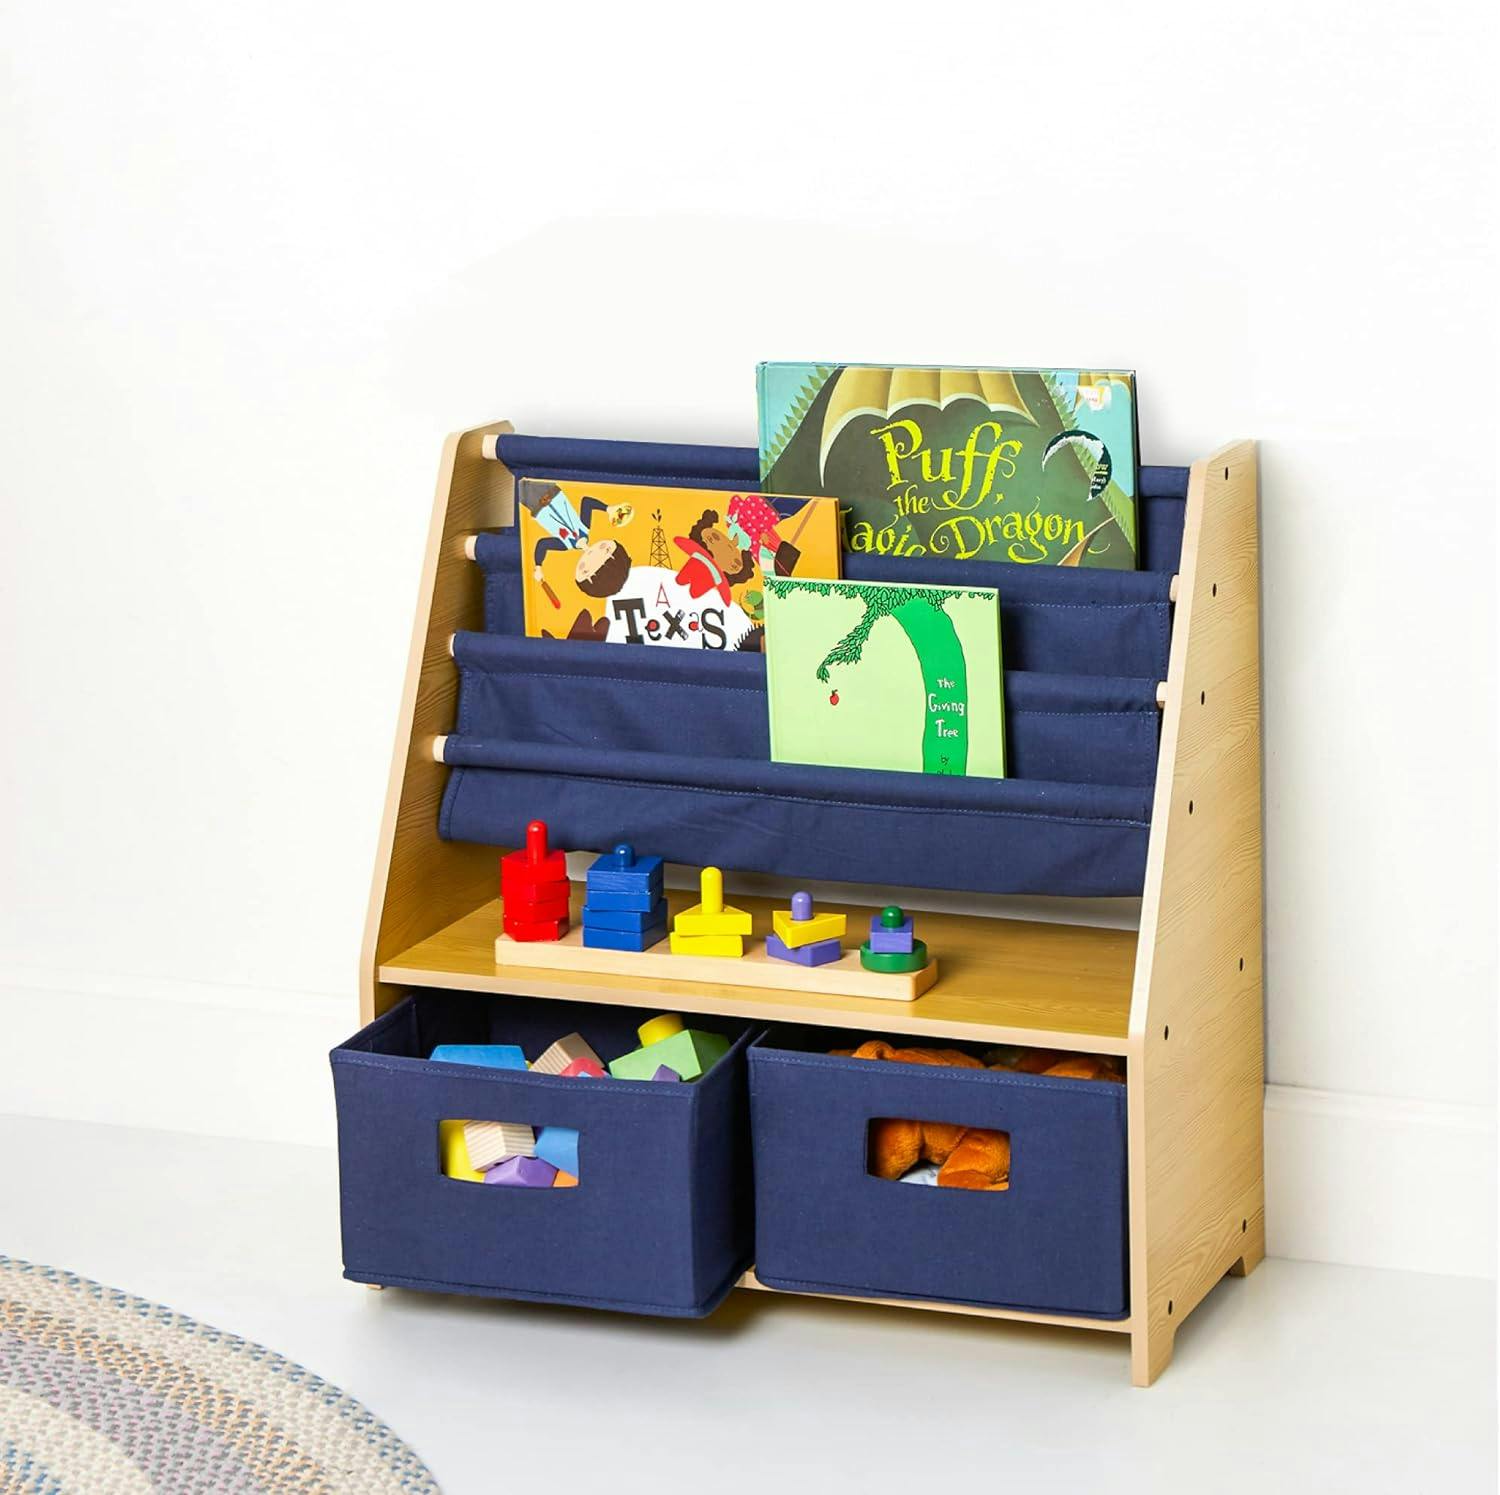 Wildkin Kids Natural & Blue Canvas Sling Bookshelf with Storage